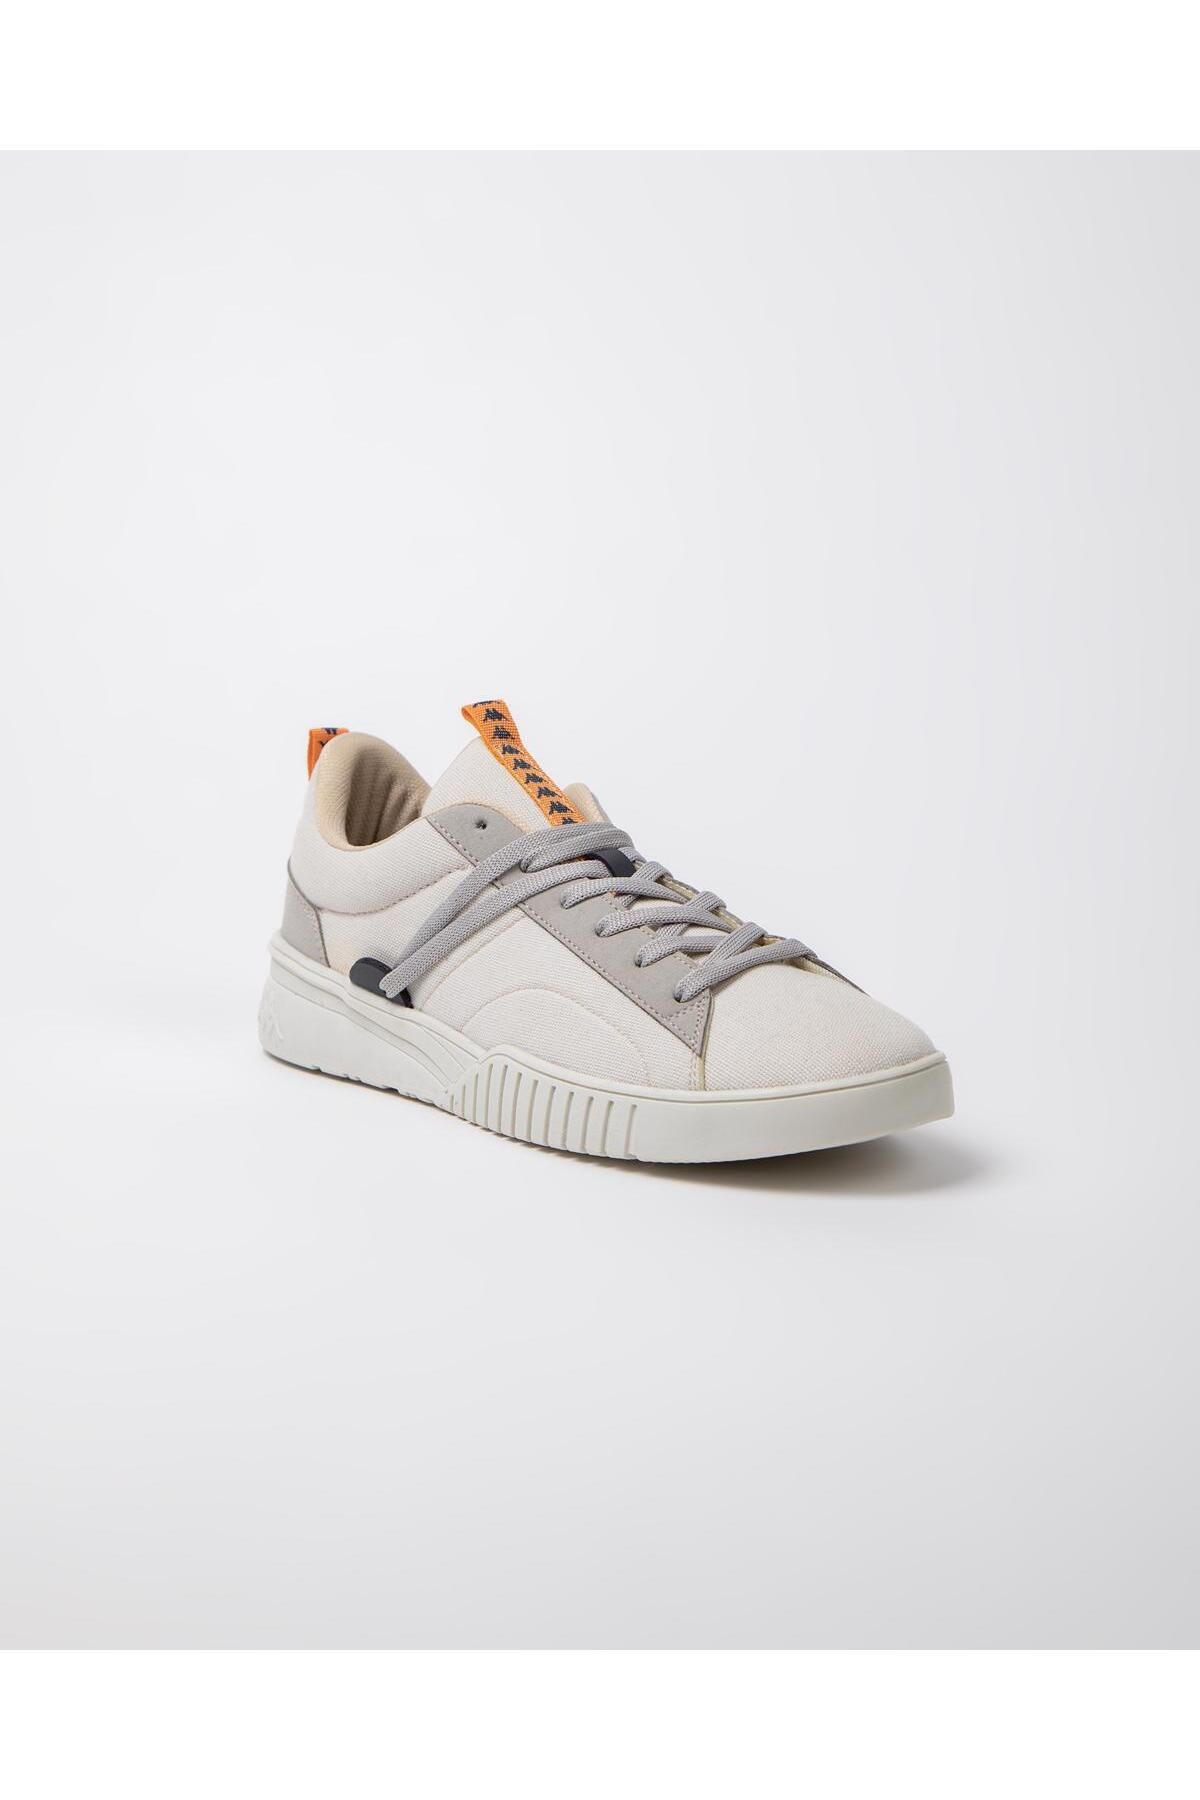 Kappa Sneakers - White - Trendyol